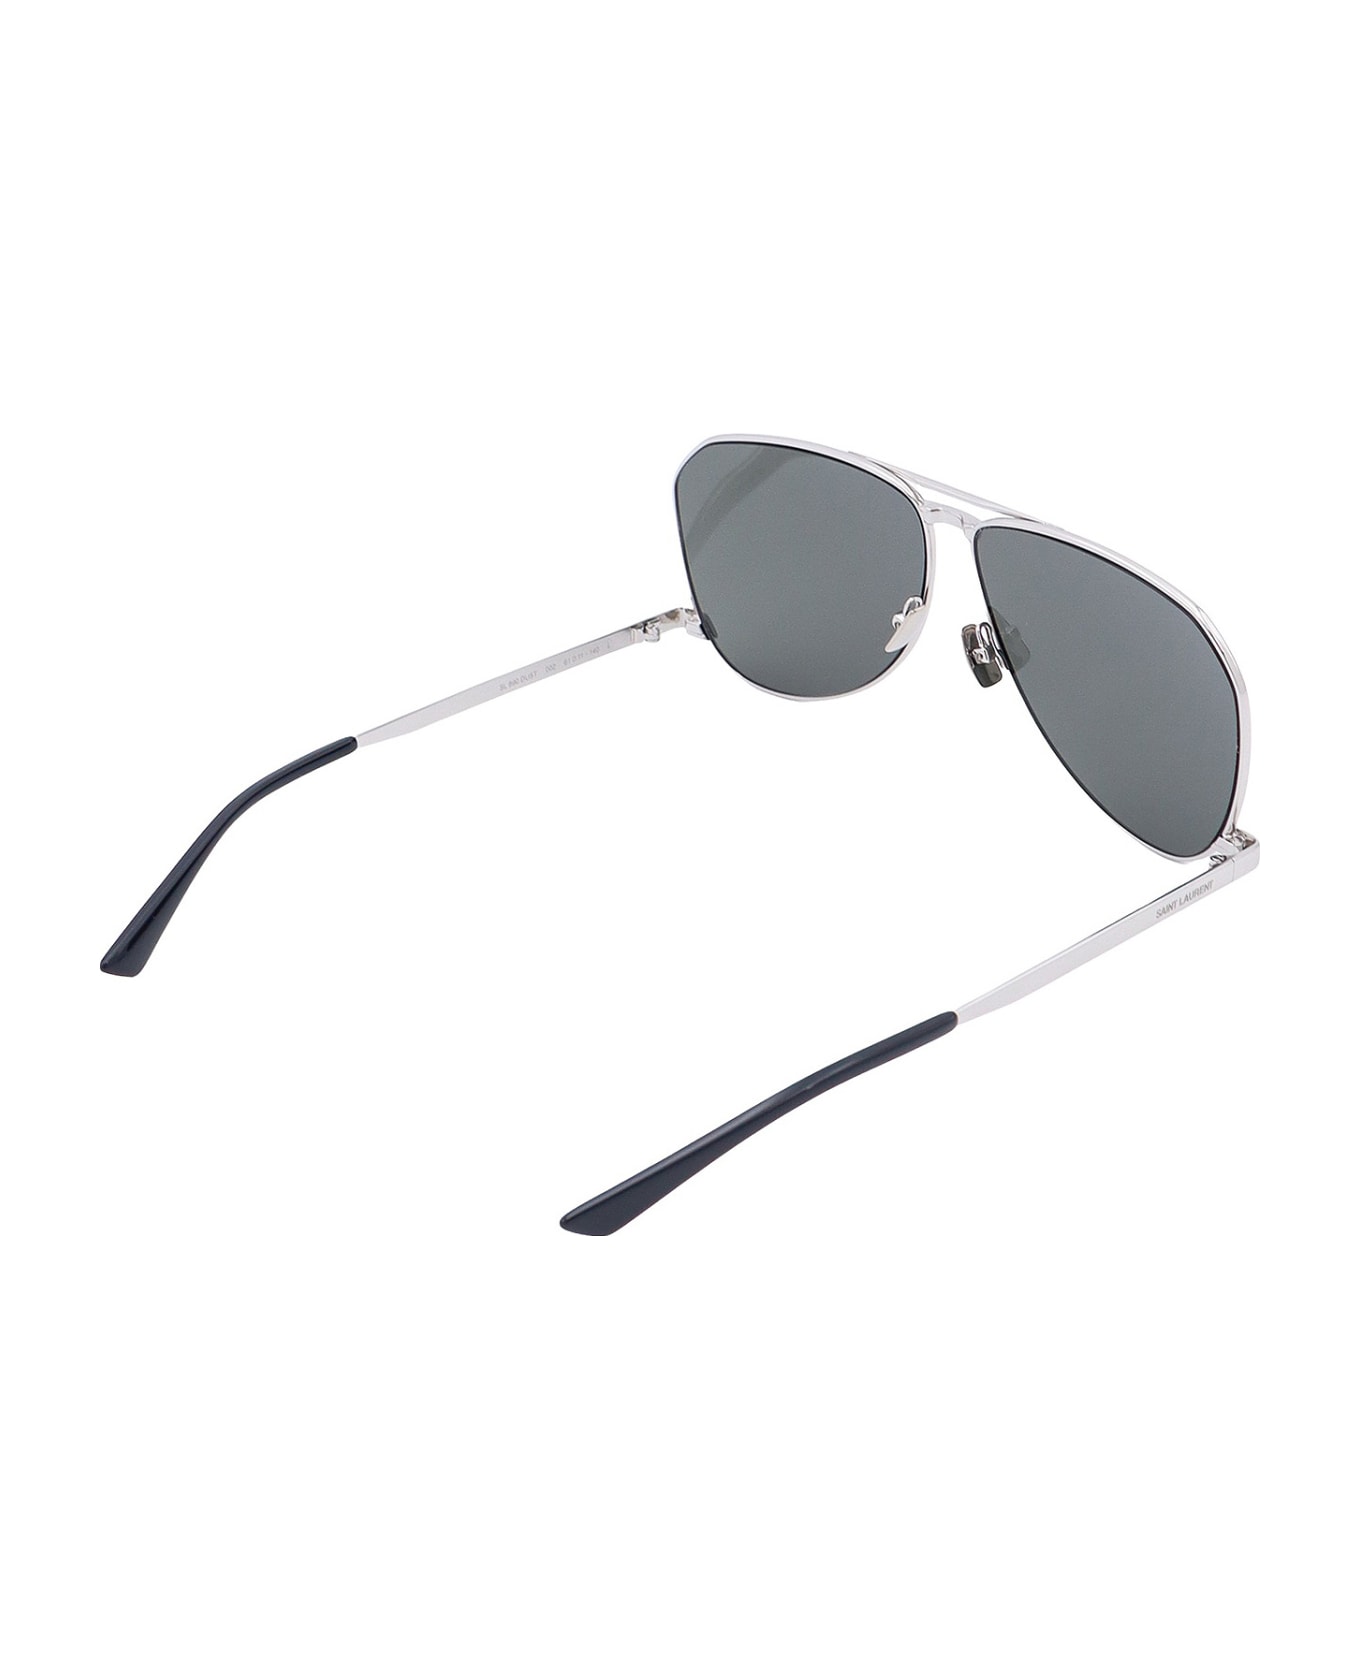 Saint Laurent Sl 690 Sunglasses - Silver